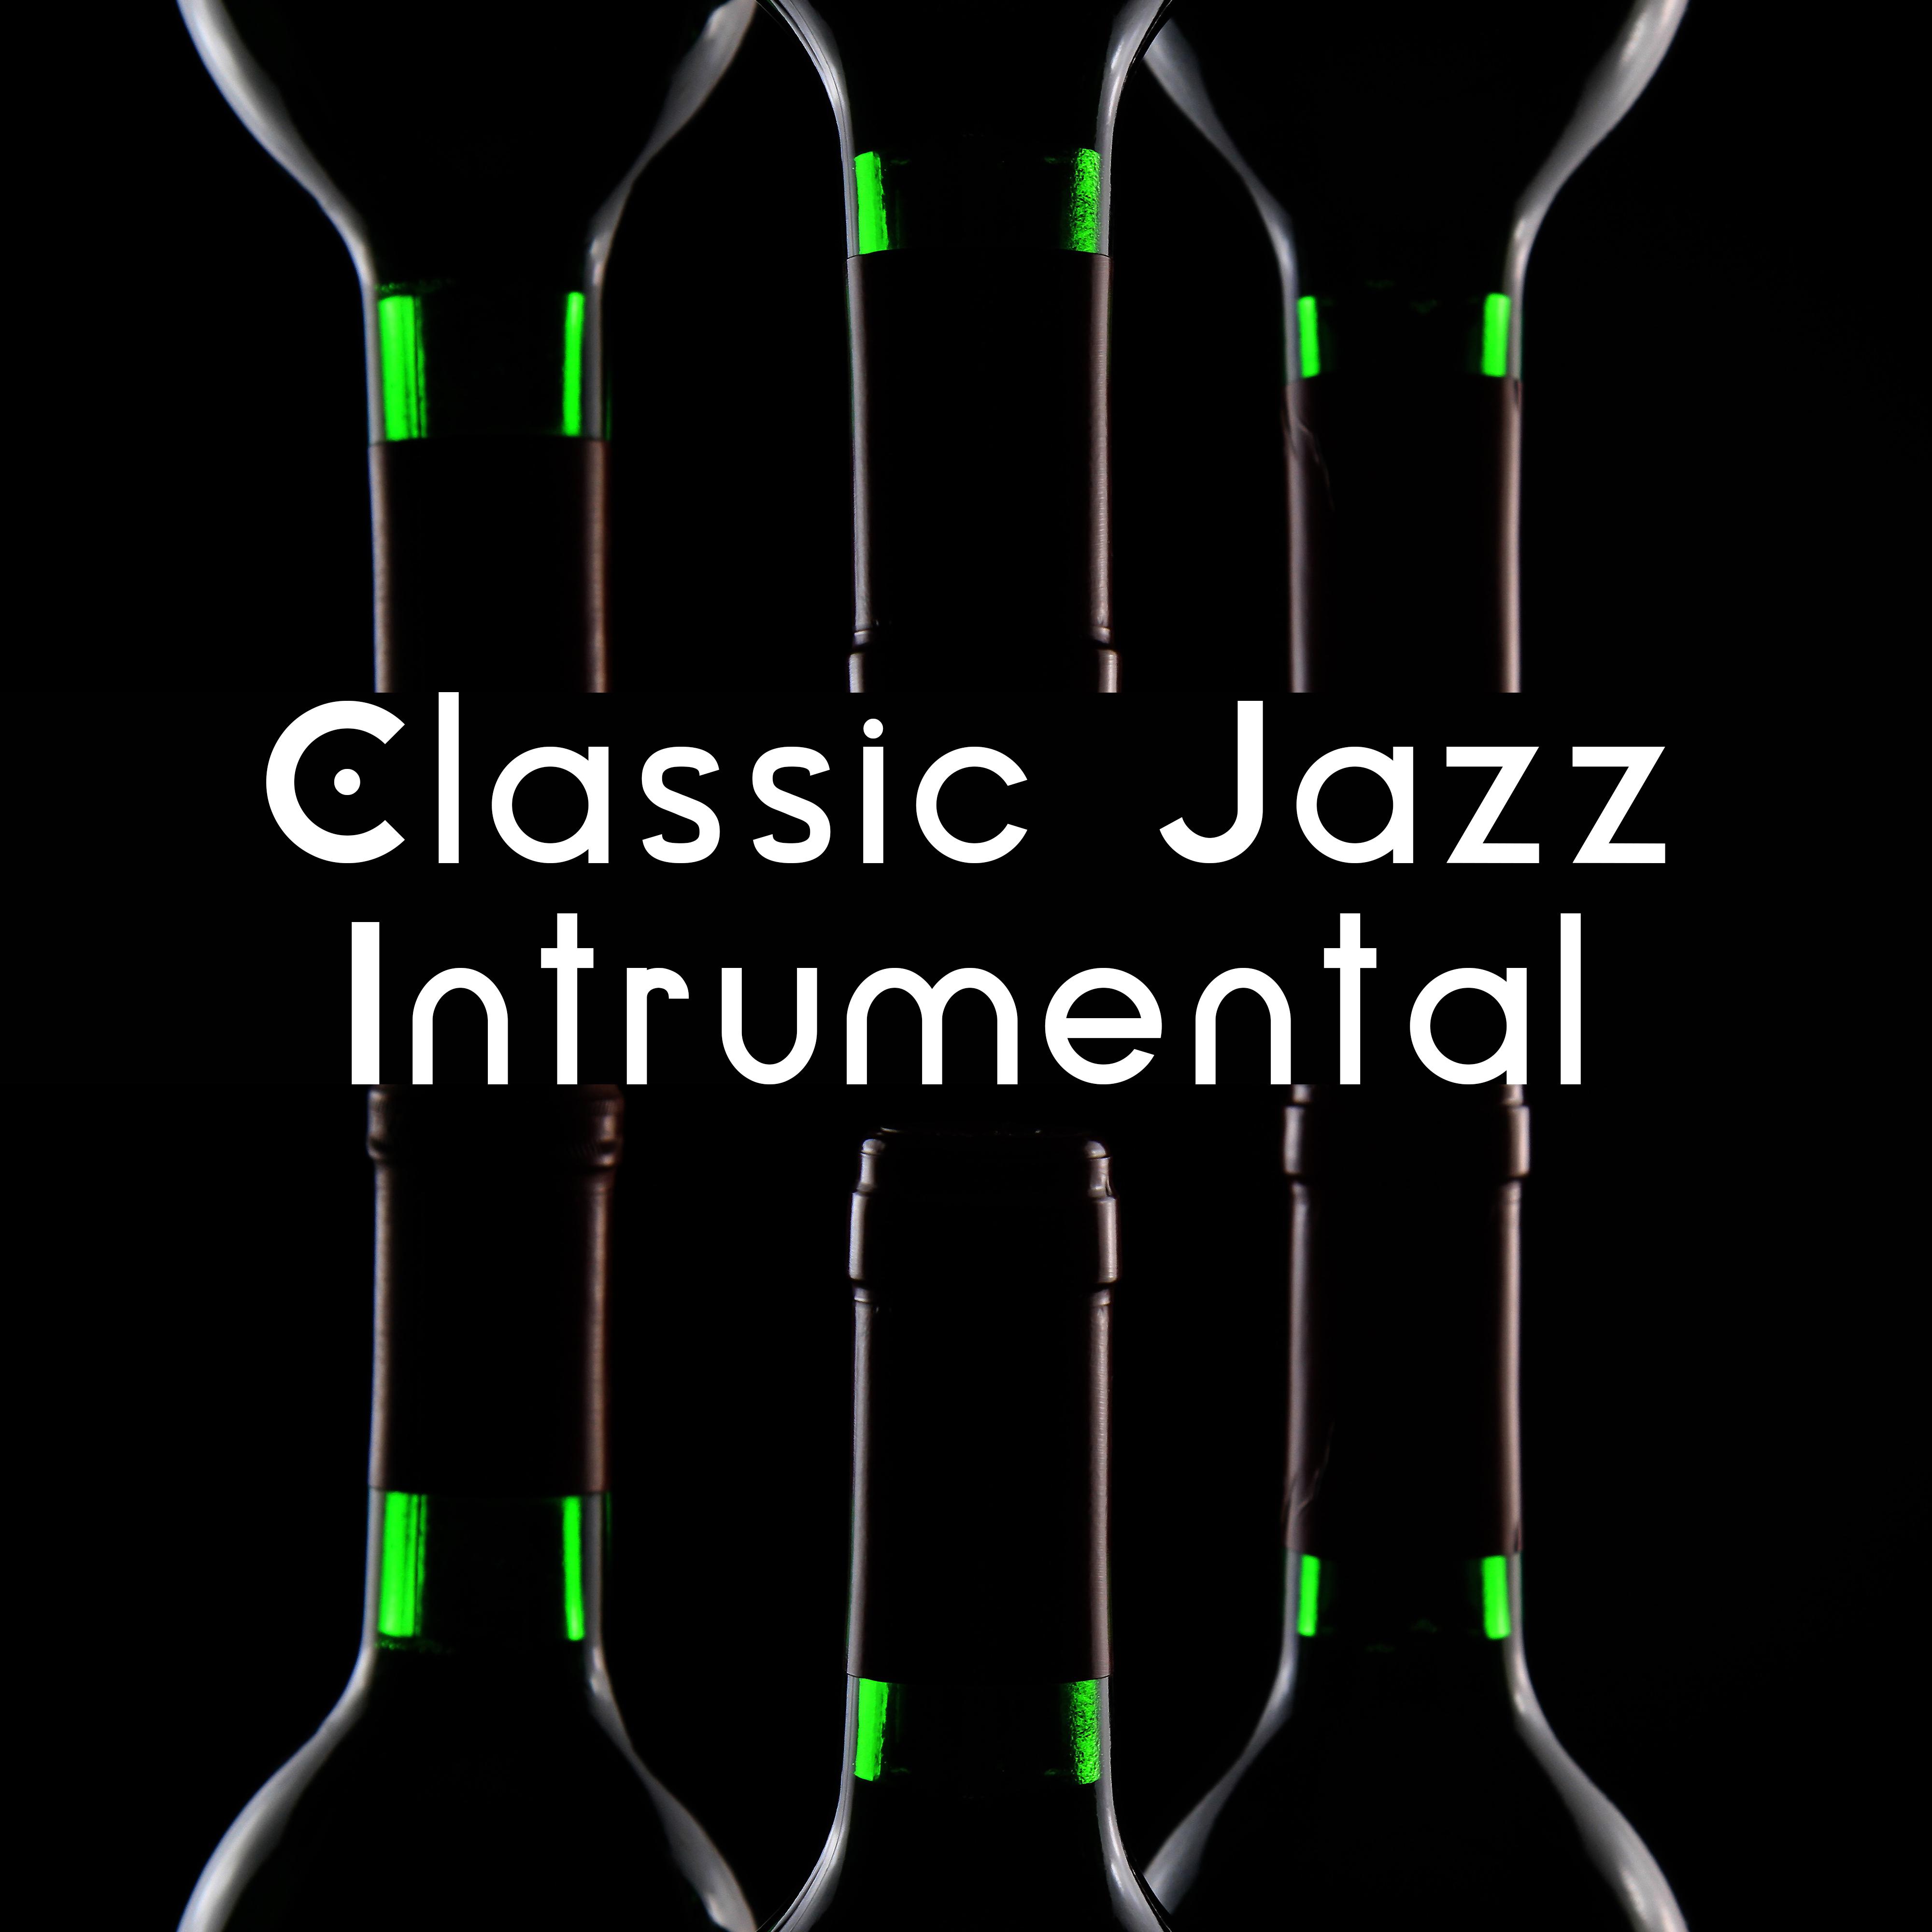 Classic Jazz Intrumental – The Best of Jazz Instrumental, Lounge, Piano Bar, Smooth Jazz